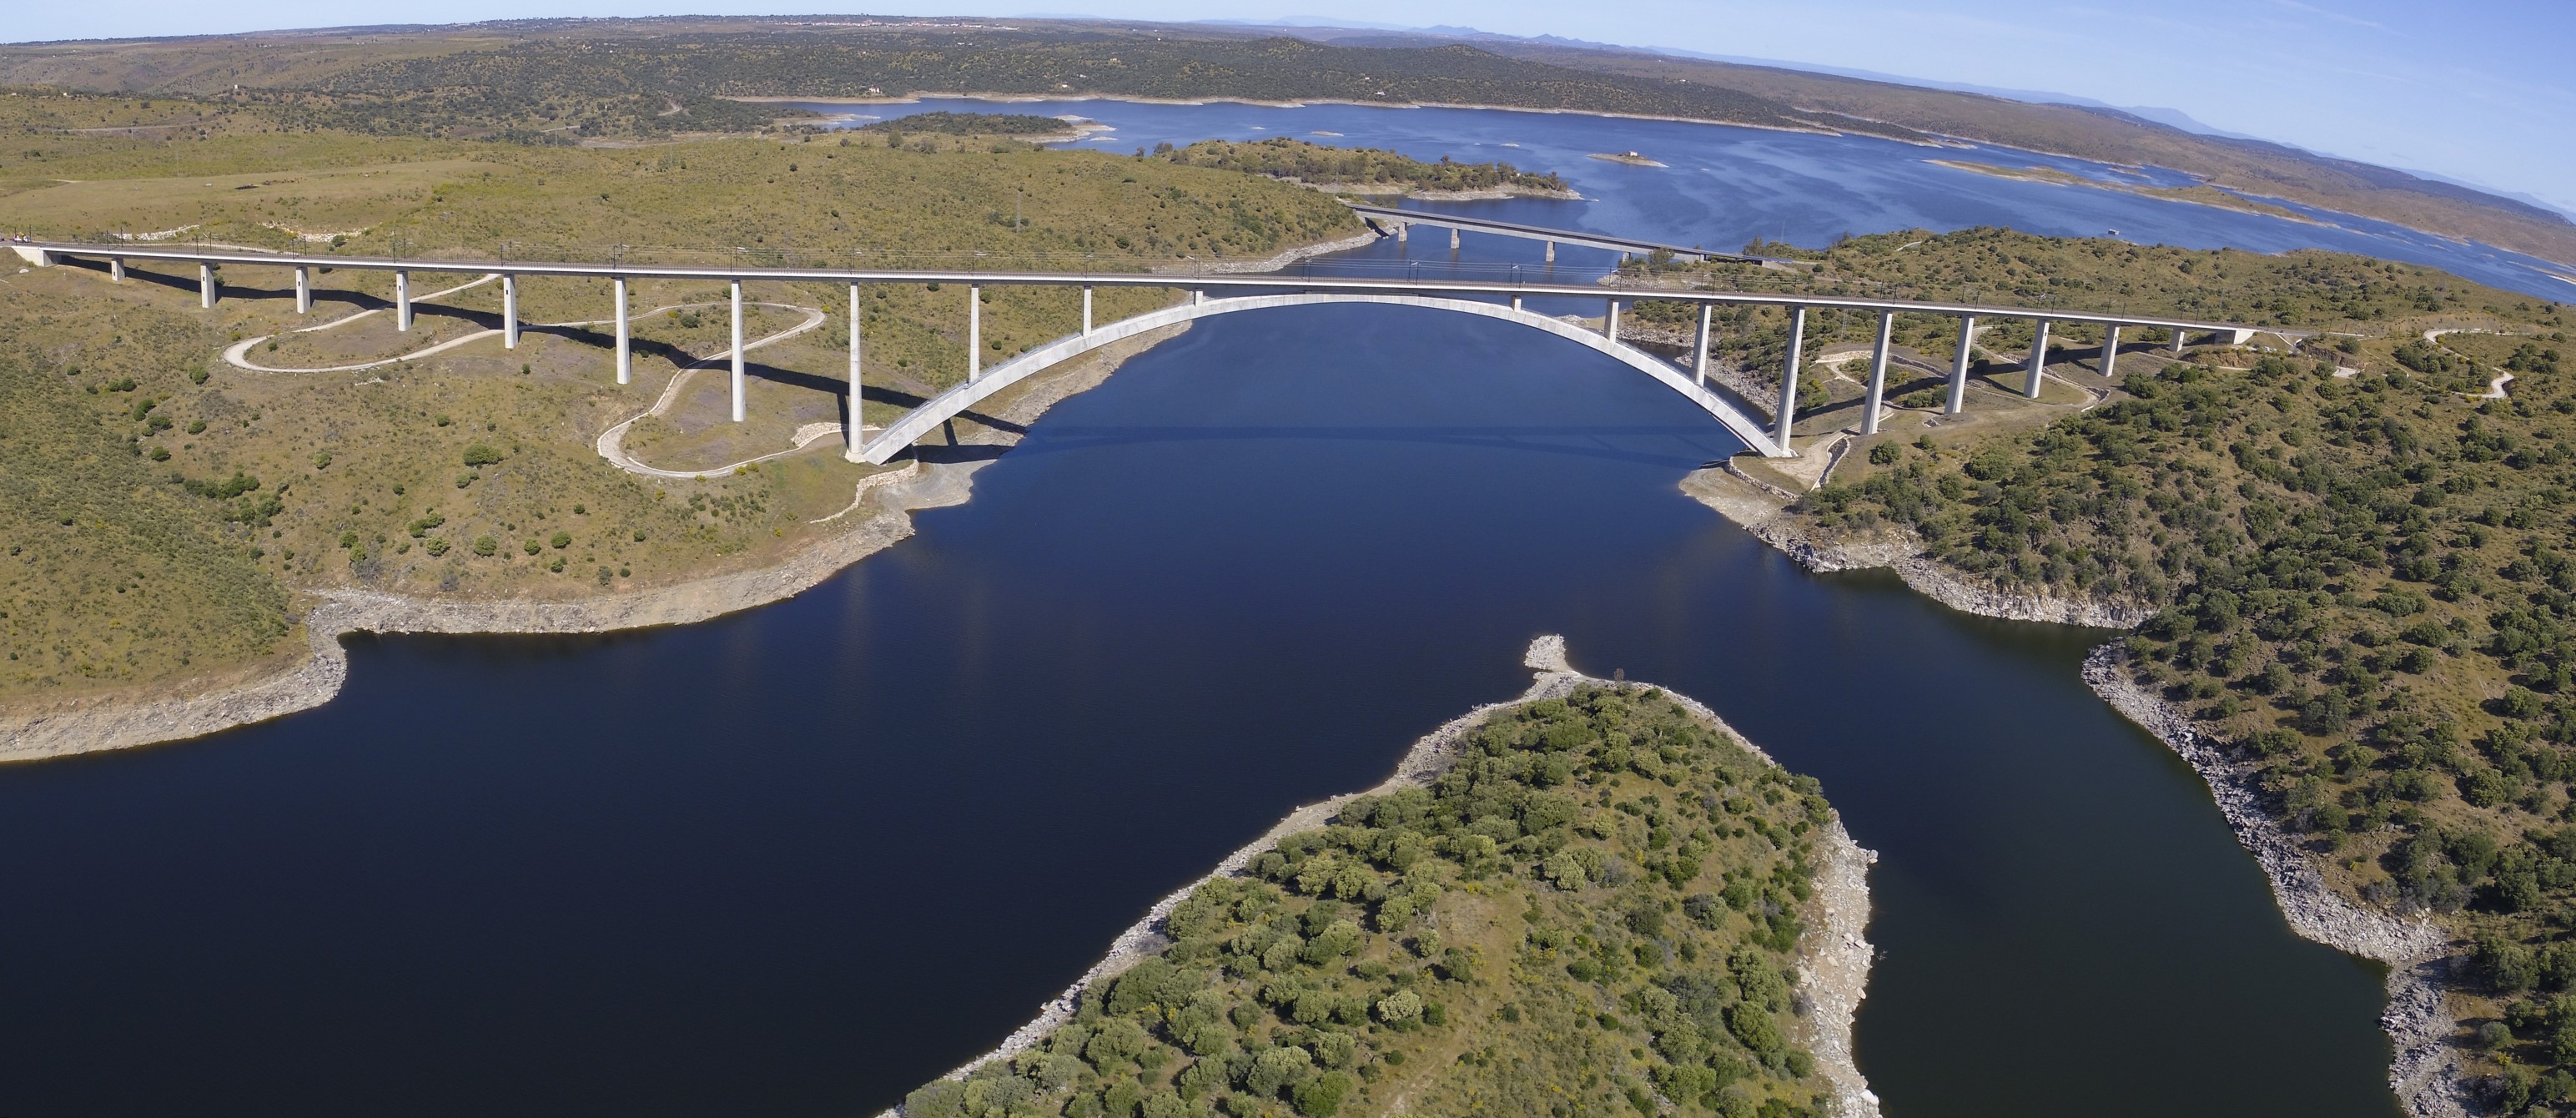 LAV Extremadura. Viaducto de Almonte. Panorámica desde dron.